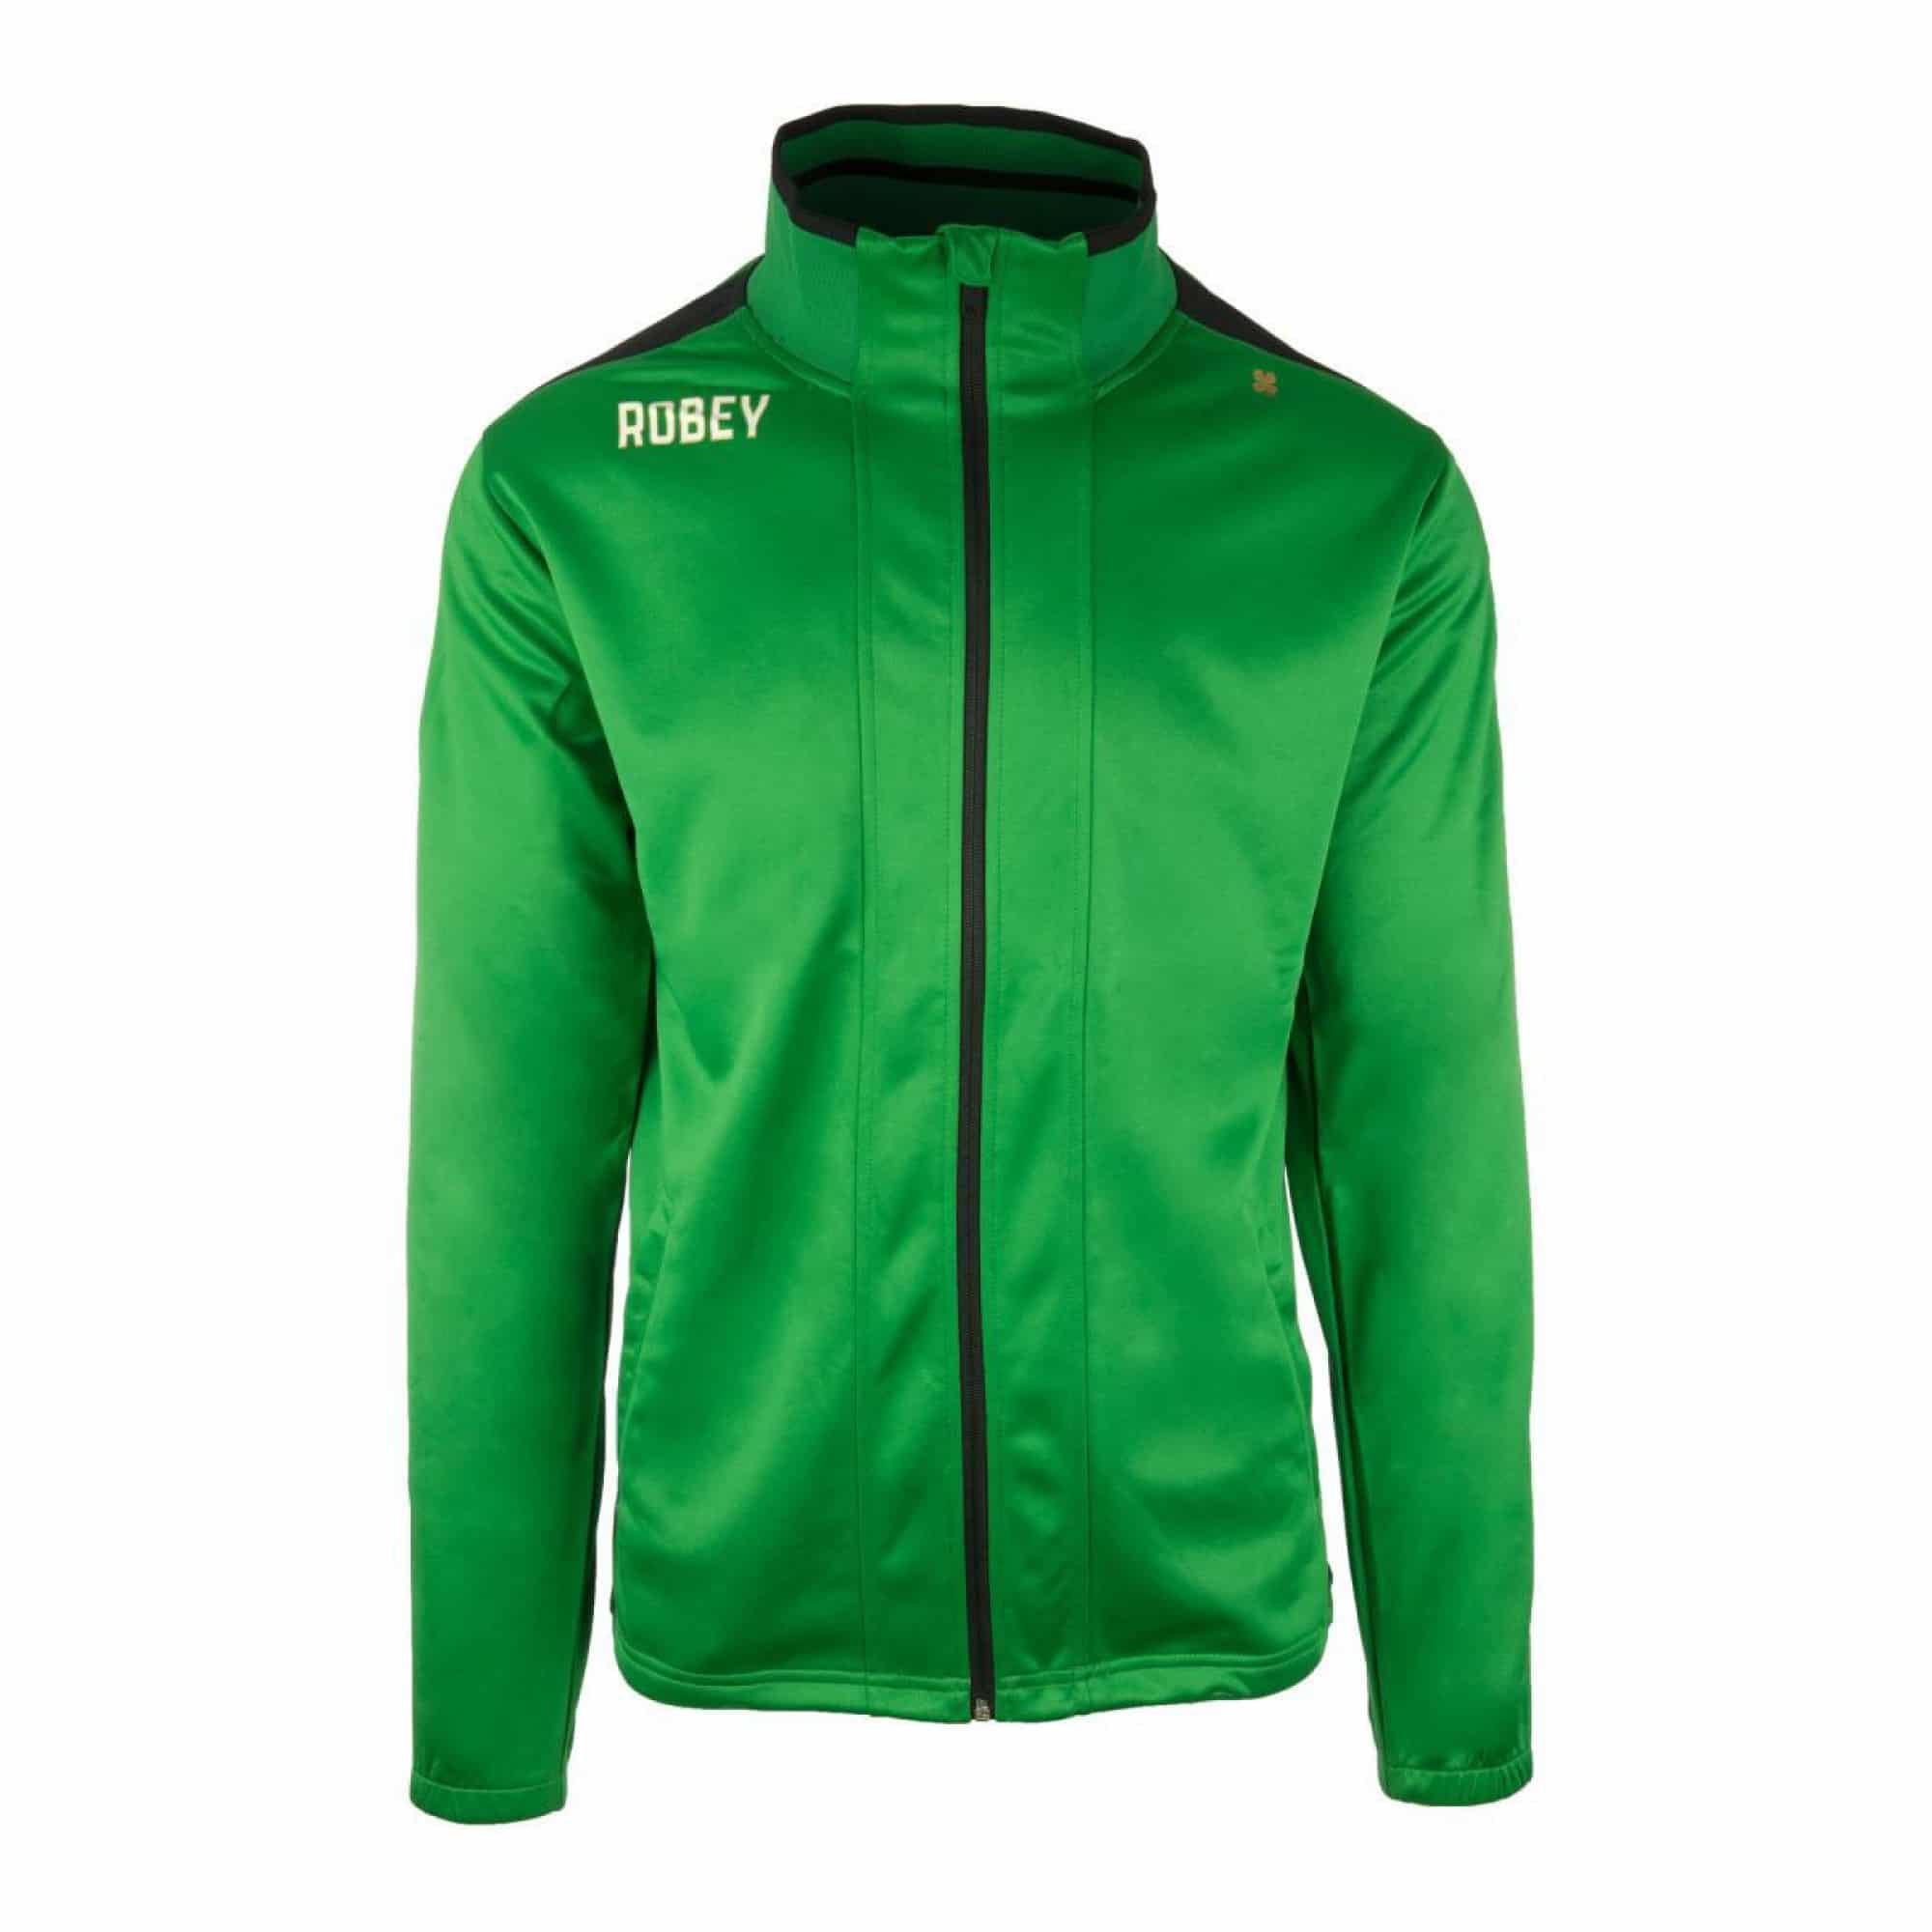 Robey - Performance - Træningsjakke - grøn M Grøn - 502